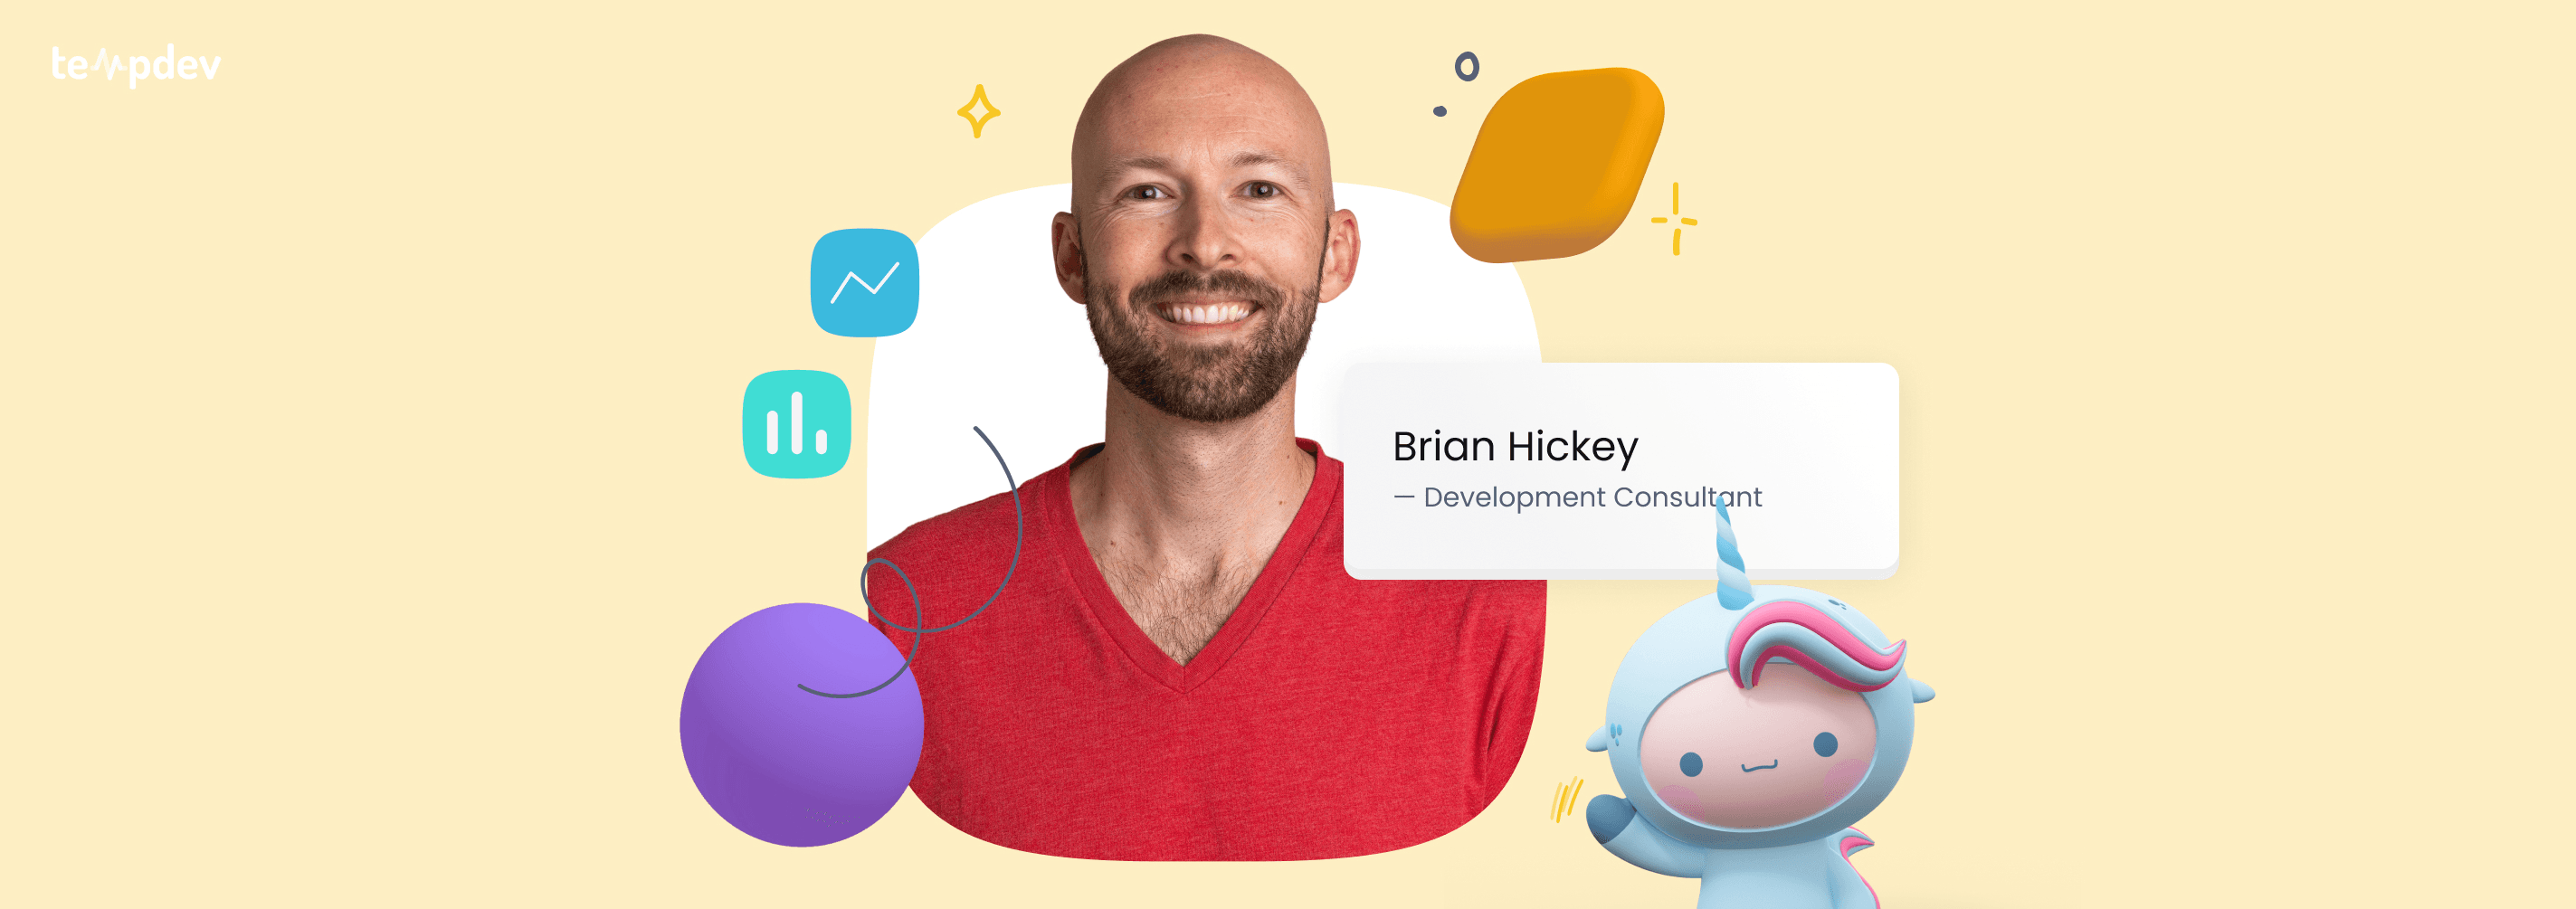 Meet Brian Hickey: NextGen Development Consultant